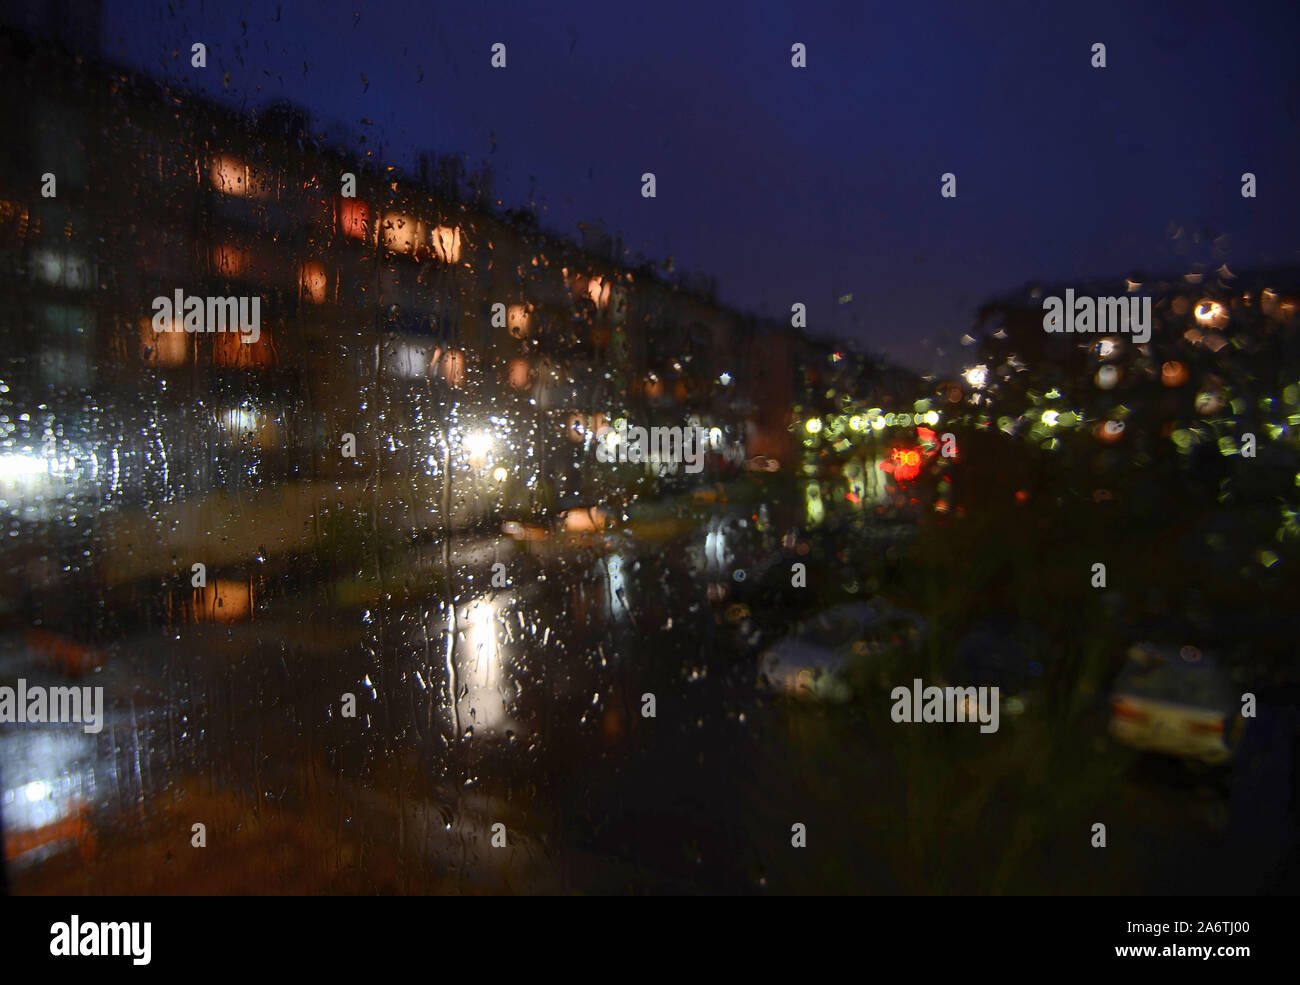 Sityscape pluvieux nuit à l'extérieur de la fenêtre - volet arrière-plan flou flou artistique avec des gouttes d'eau sur le verre, de l'éclairage de nuit, flou des voitures en stationnement. Mela Banque D'Images